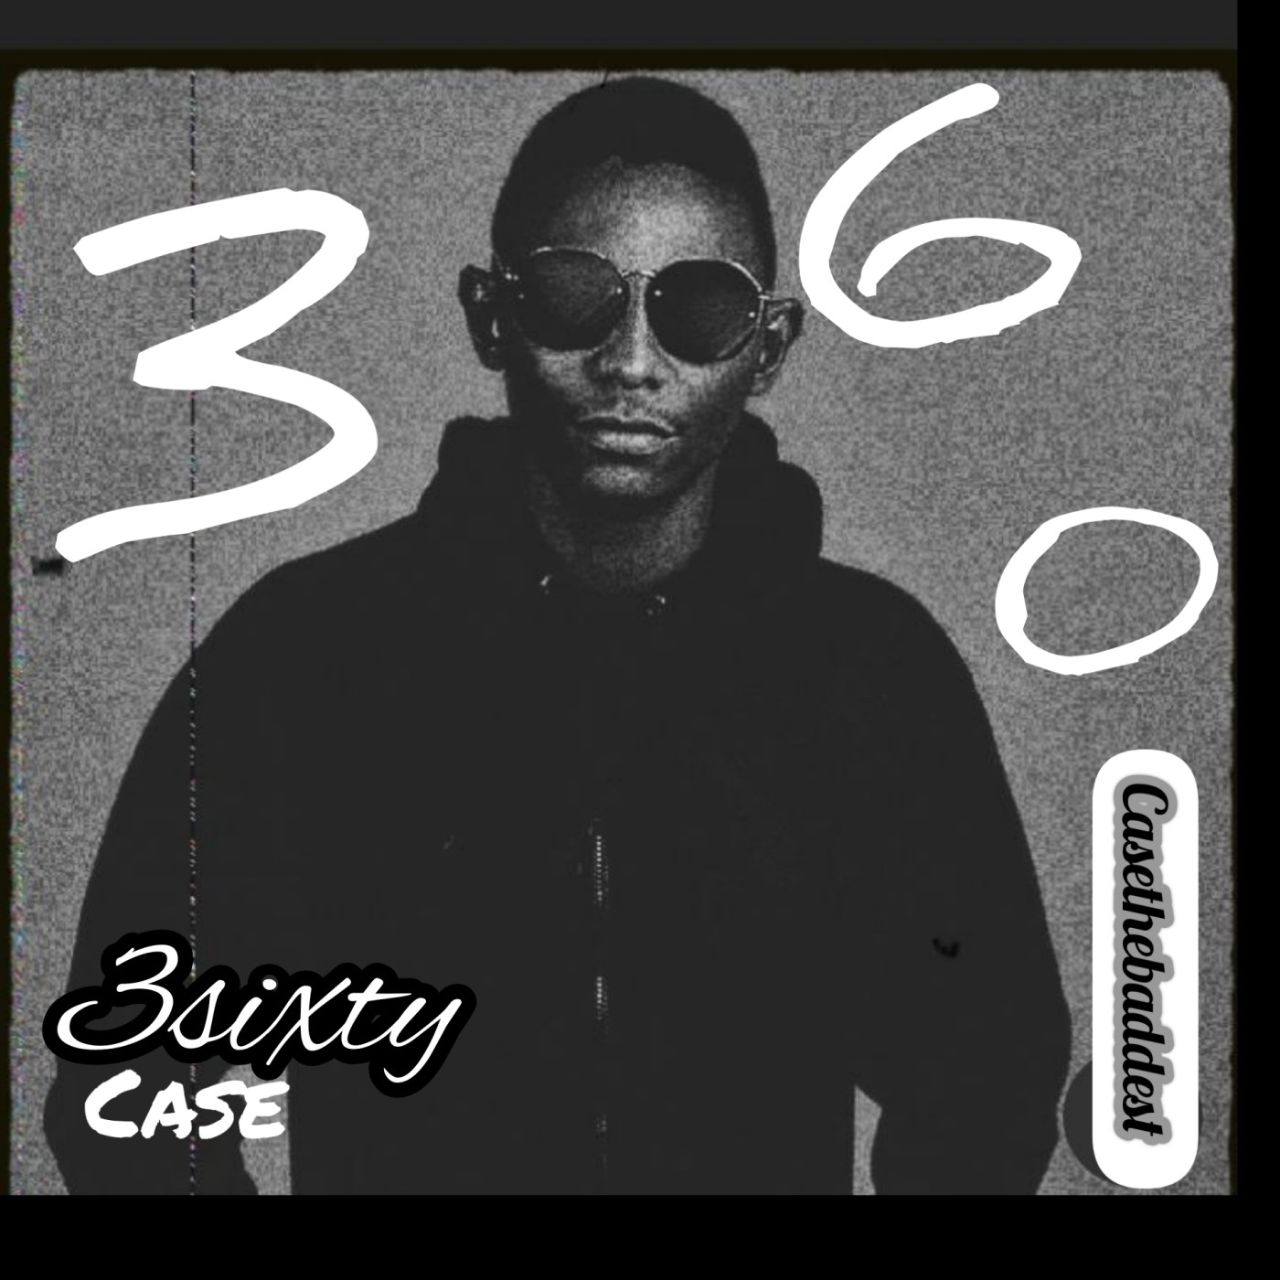 Case - 3 Sixty